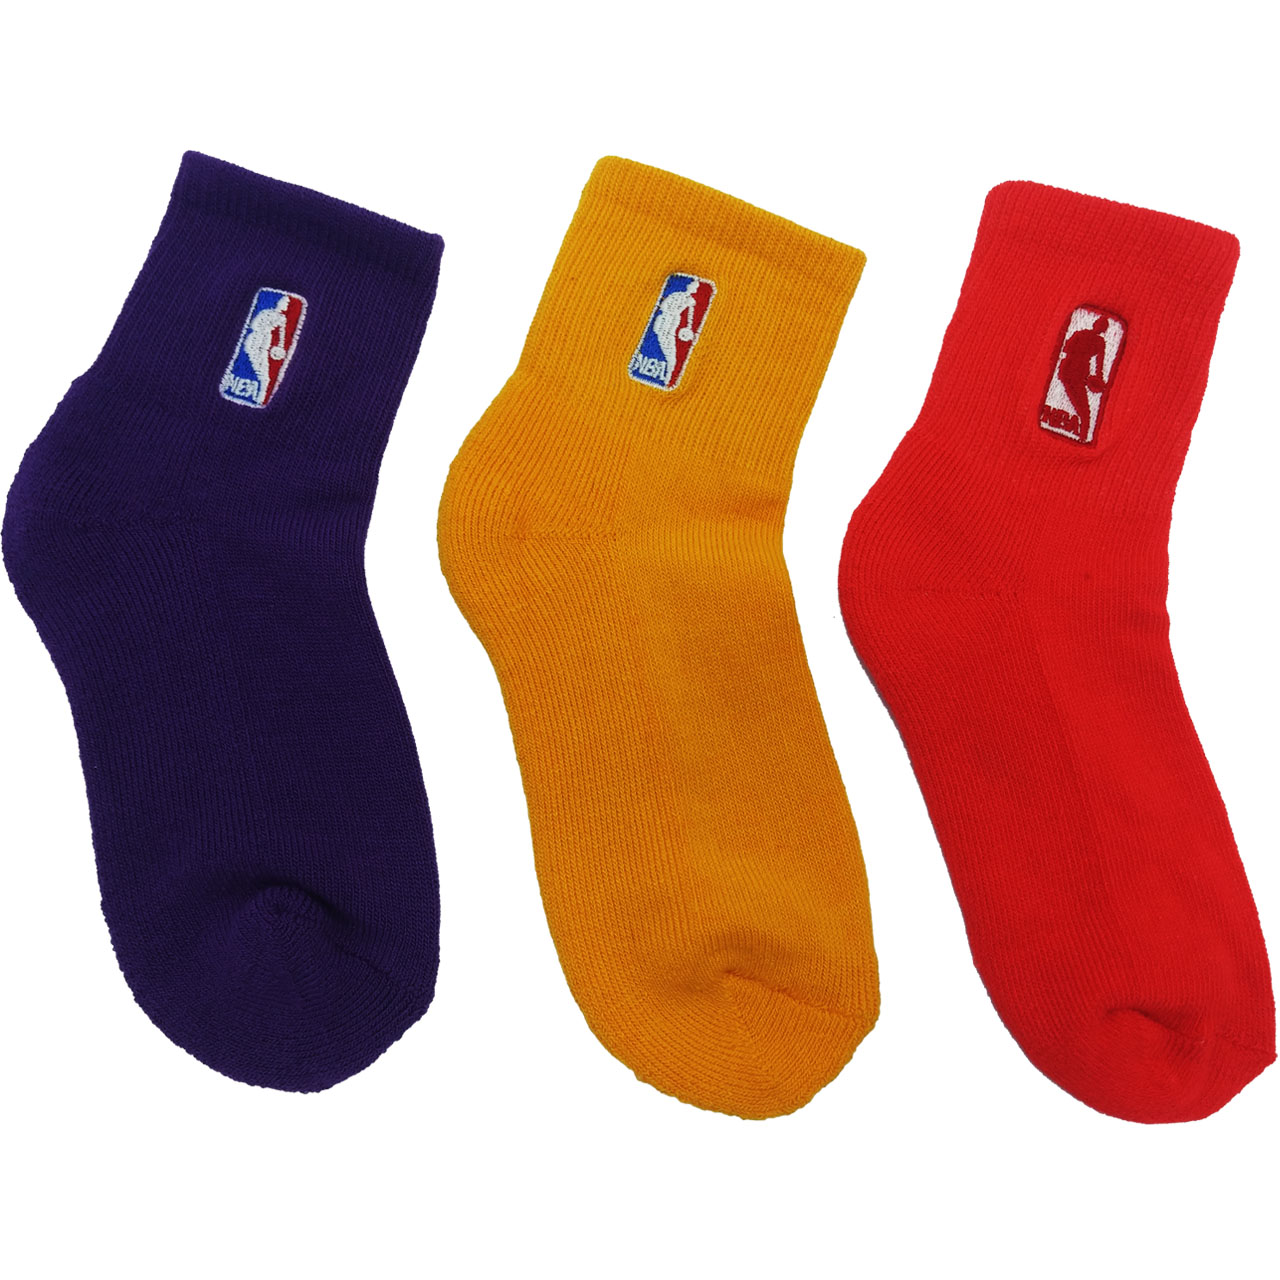 جوراب ورزشی بچه گانه مدل NBA RGB 1 مجموعه 3 عددی